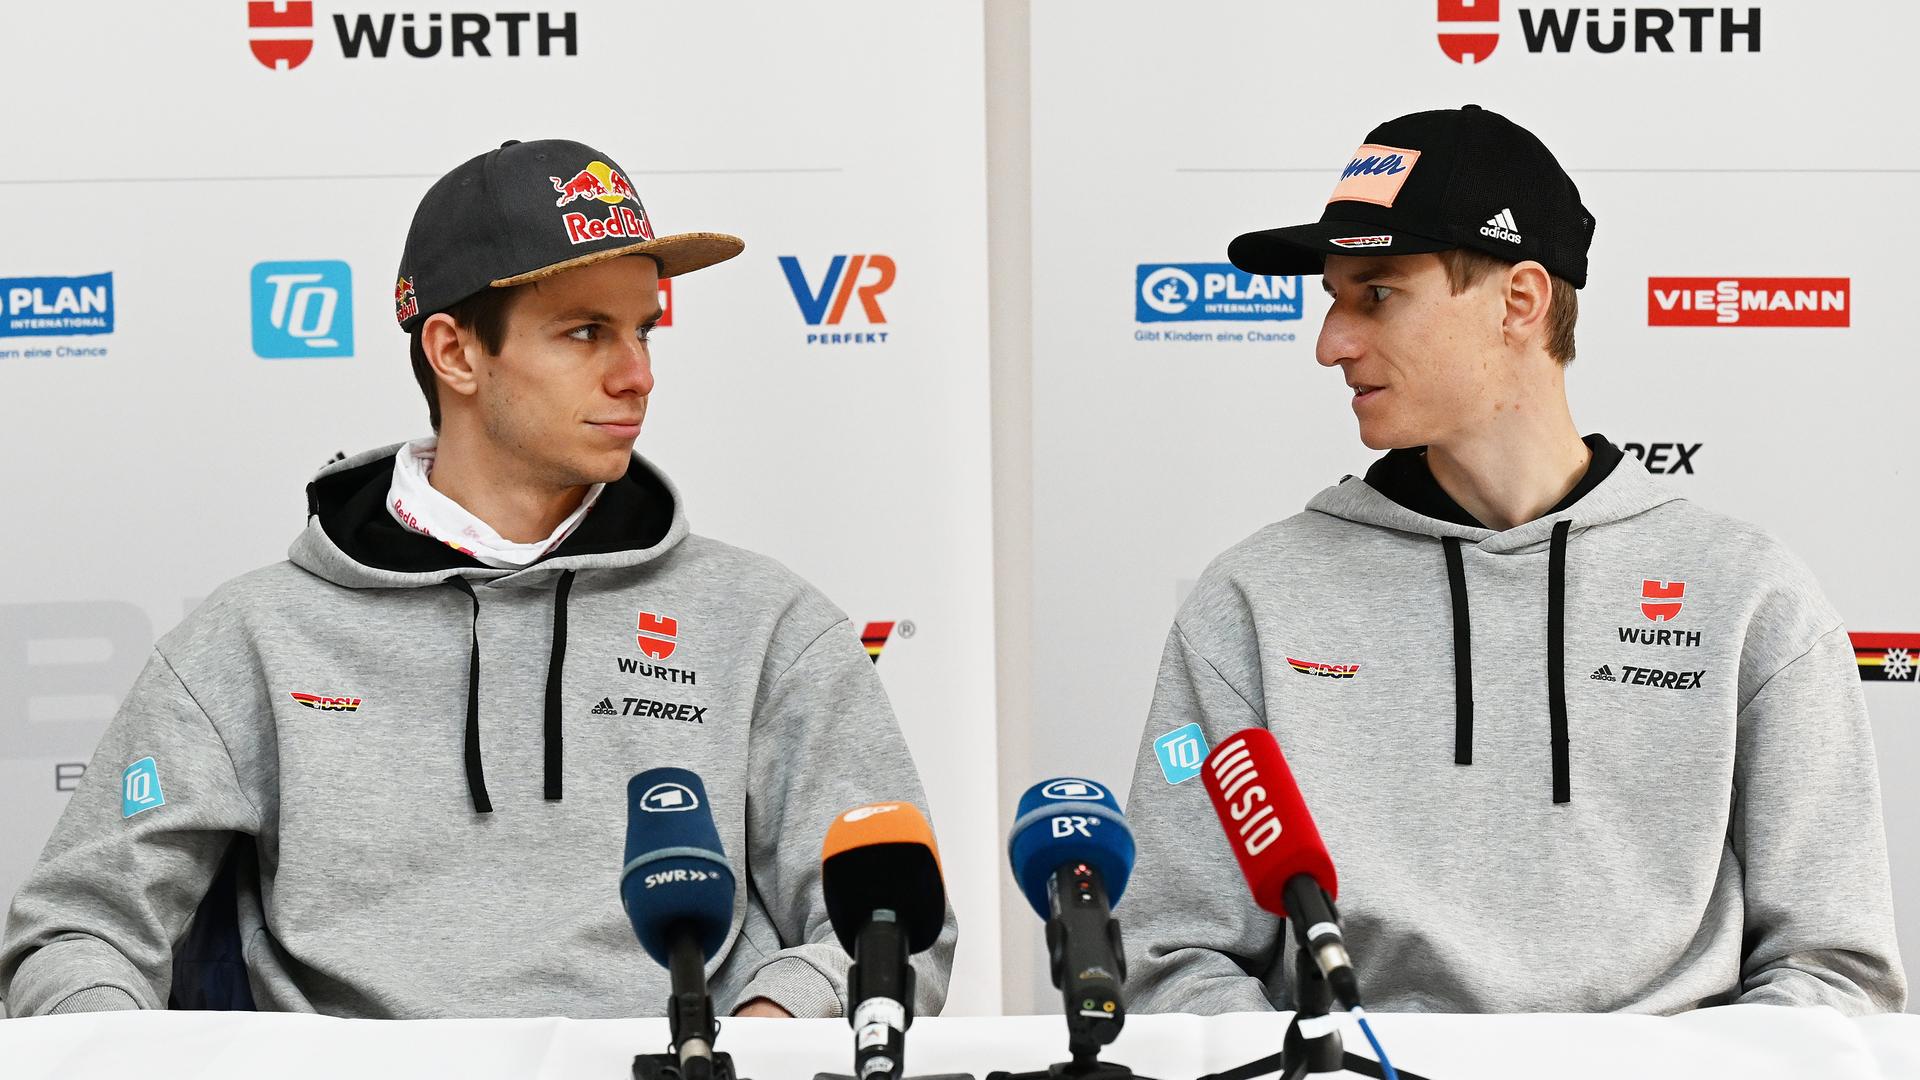 Andreas Wellinger und Karl Geiger bei der Pressekonferenz nach dem Sieg im Super-Team-Wettbewerb